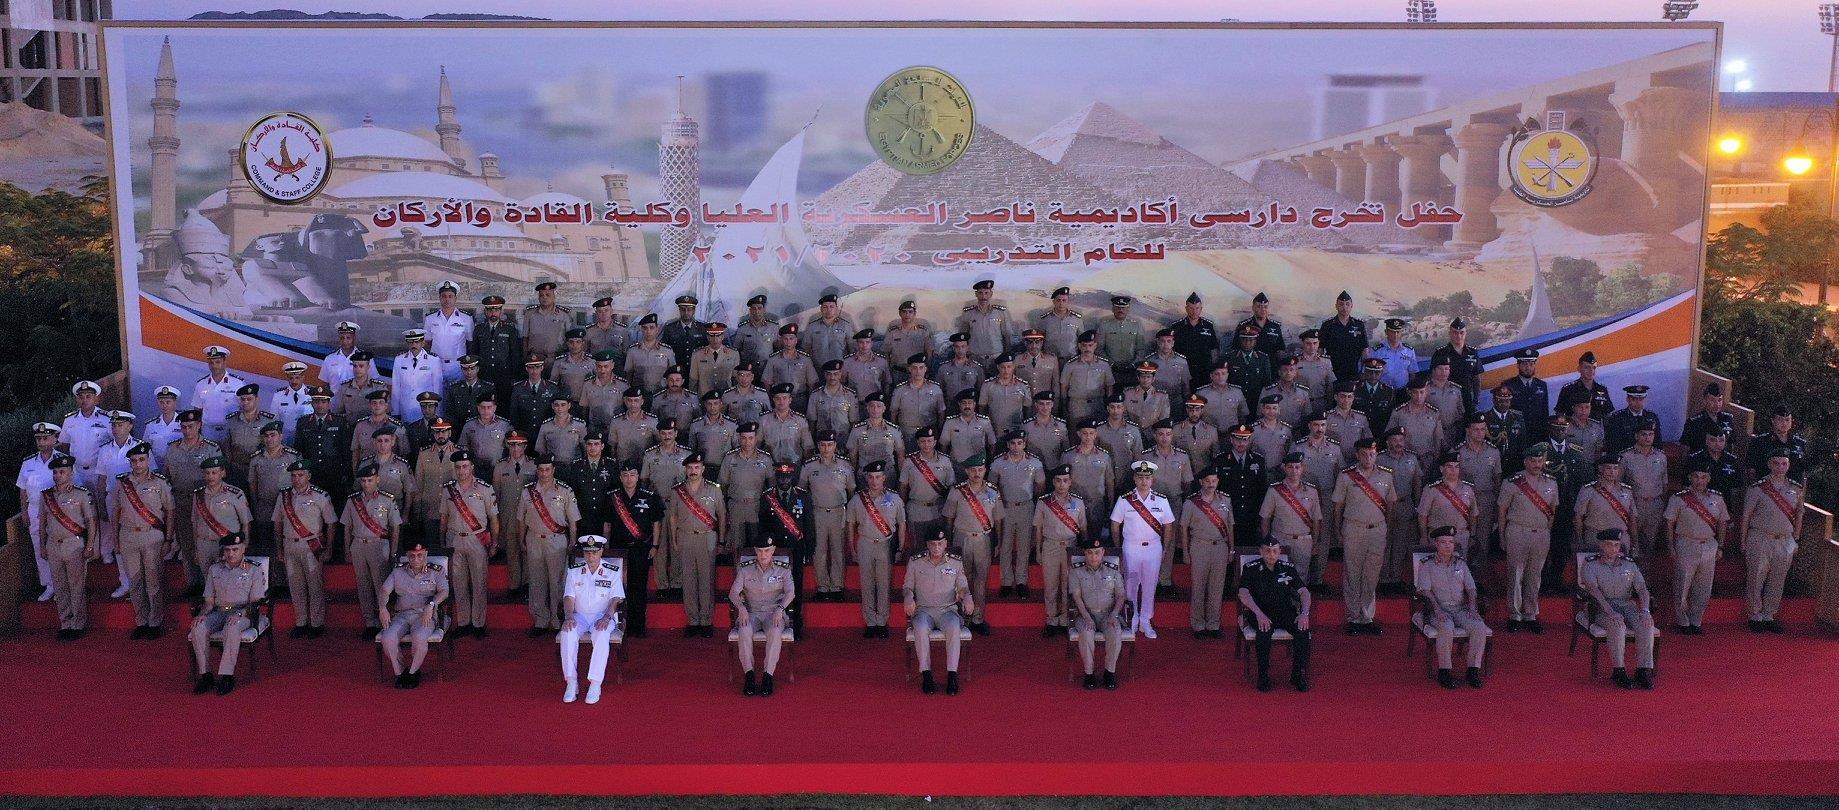 وزير الدفاع يشهد تخريج دورات جديدة من دارسى أكاديمية ناصر العسكرية وكلية القادة والأركان